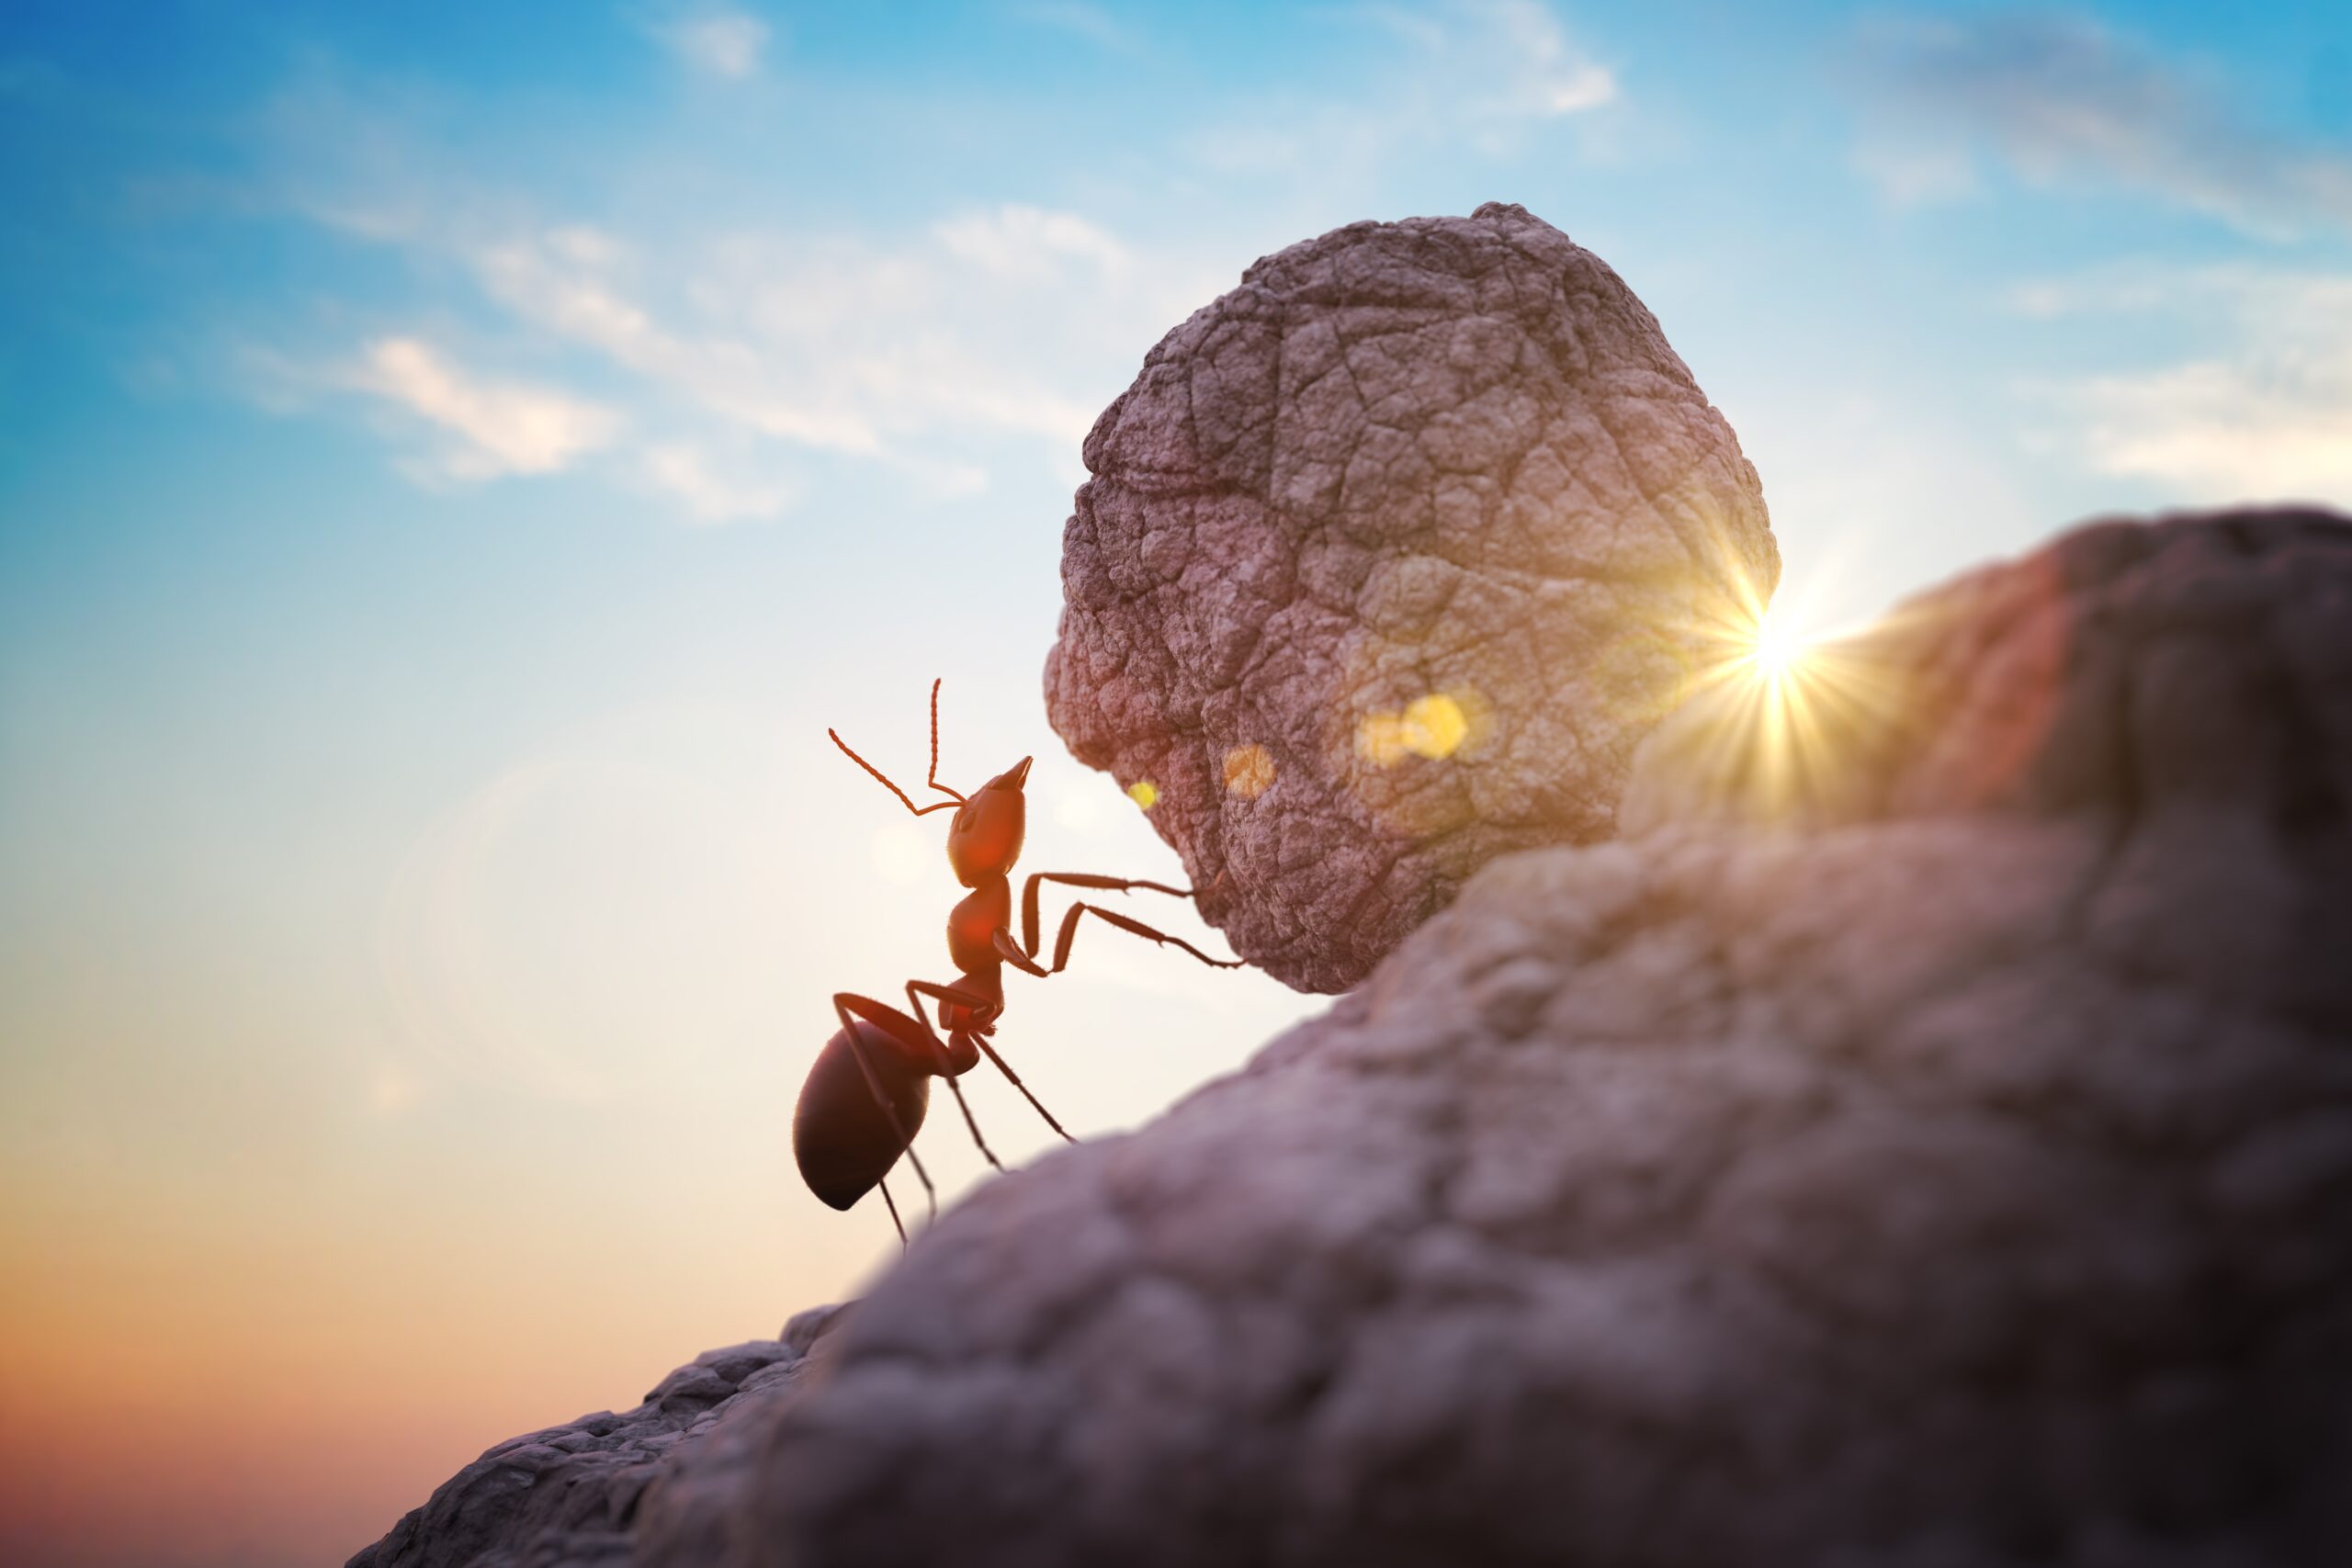 Les fourmis sont dotées d’une force exceptionnelle